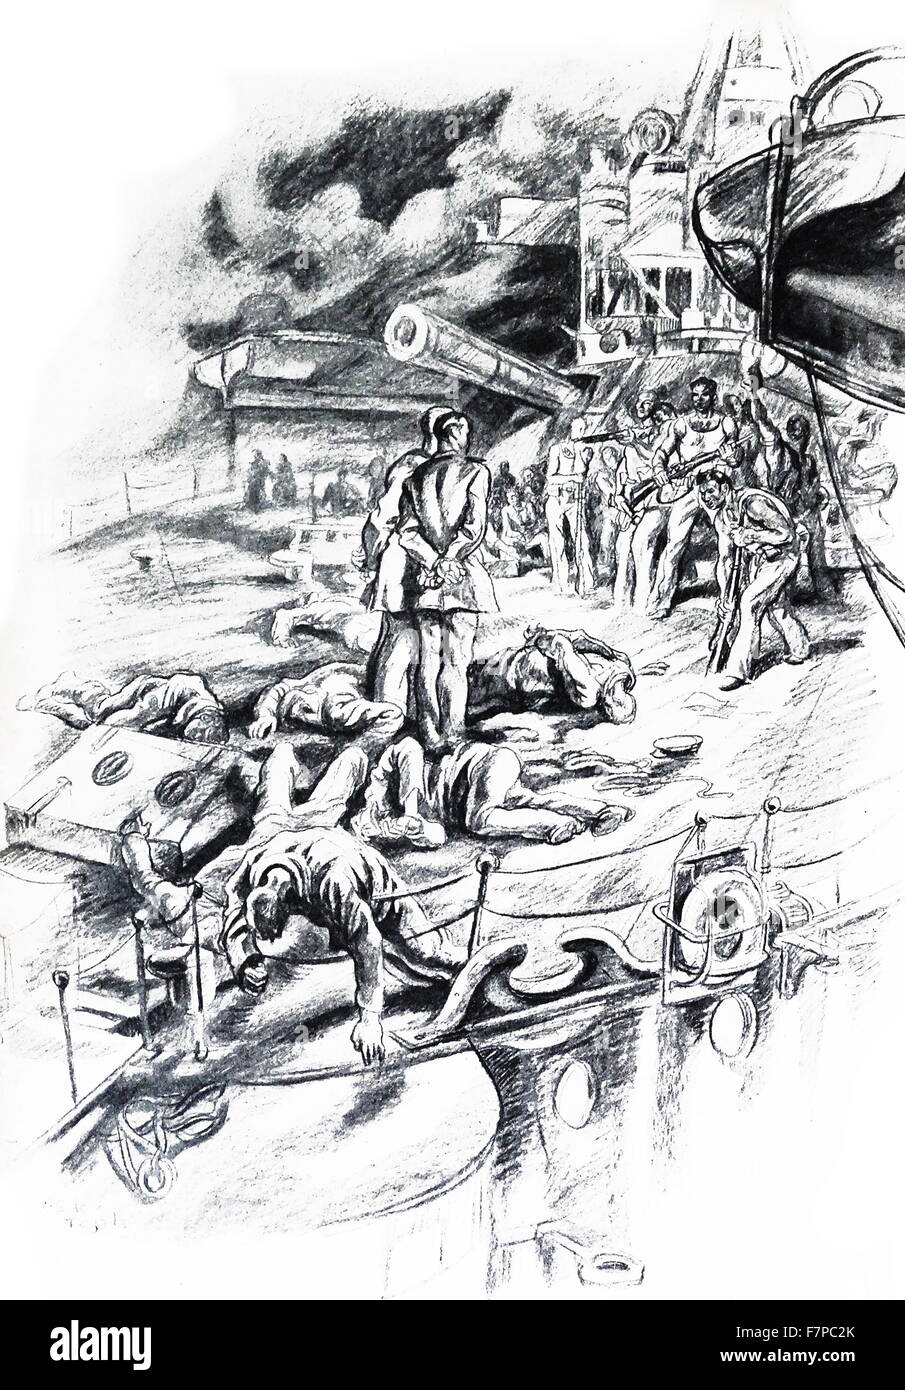 Mutins républicaine saisir un navire pendant la guerre civile espagnole. Illustration par Carlos Saenz de Tejada (1897 - 1958 ) peintre et illustrateur espagnol;identifié avec le fasciste (nationaliste) dans la guerre civile espagnole. Banque D'Images